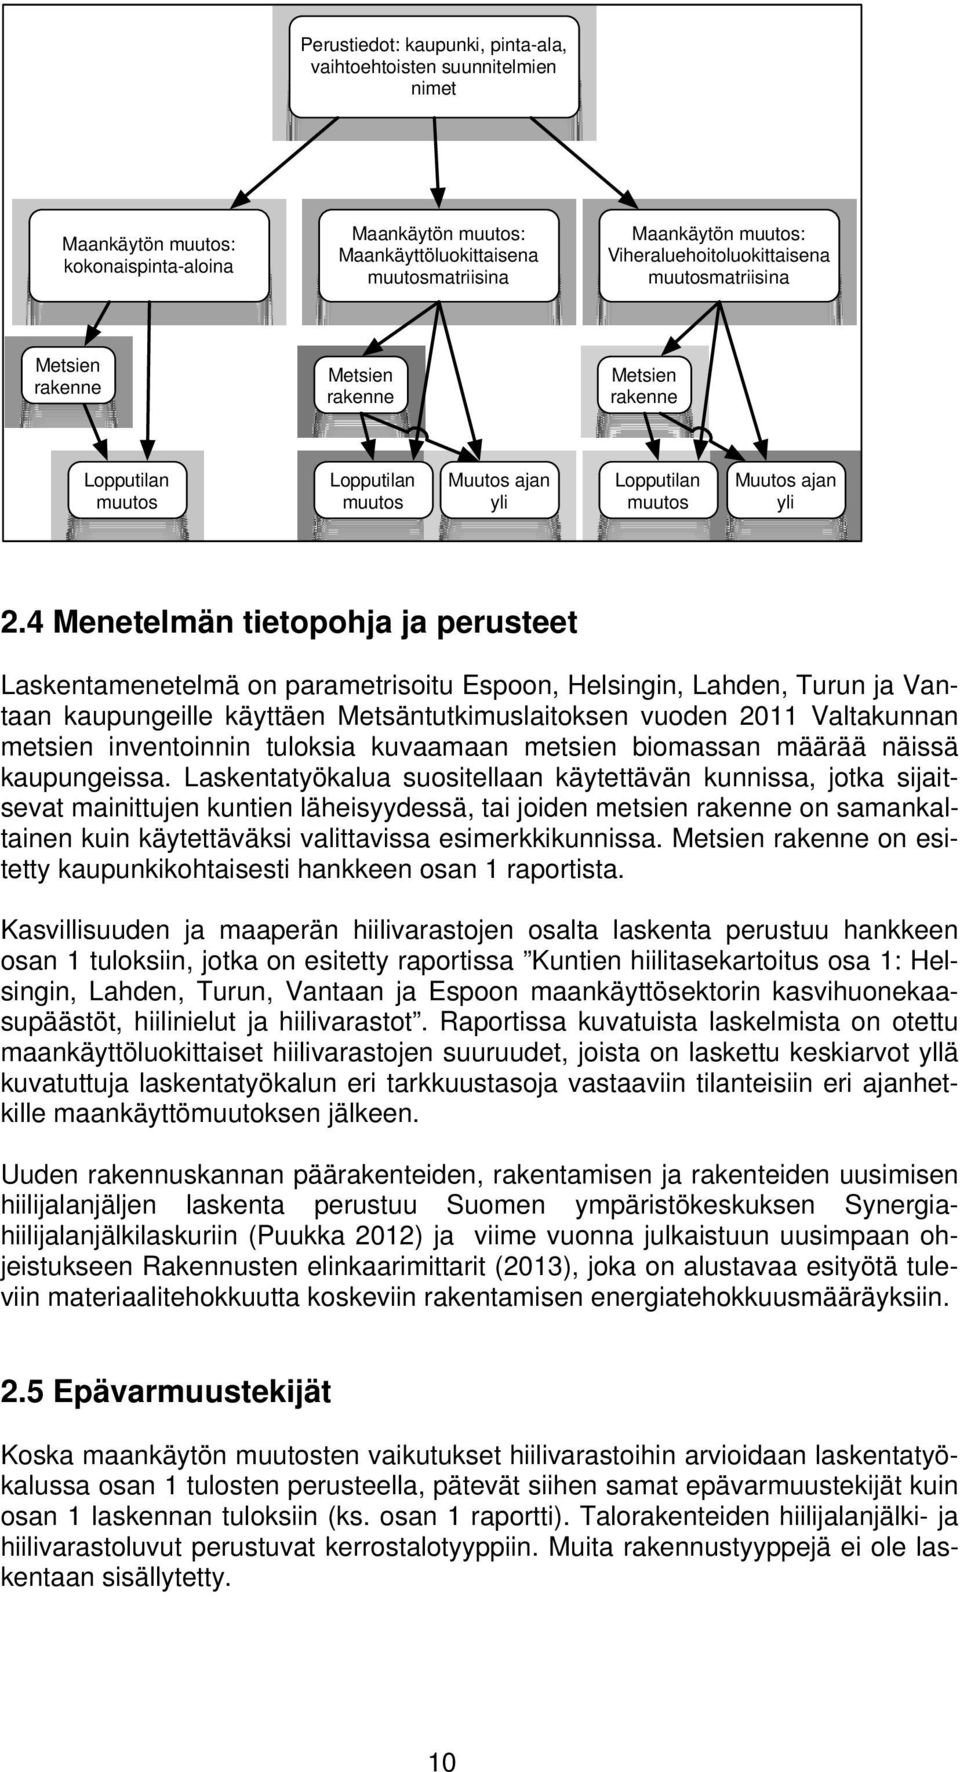 4 Menetelmän tietopohja ja perusteet Laskentamenetelmä on parametrisoitu Espoon, Helsingin, Lahden, Turun ja Vantaan kaupungeille käyttäen Metsäntutkimuslaitoksen vuoden 2011 Valtakunnan metsien